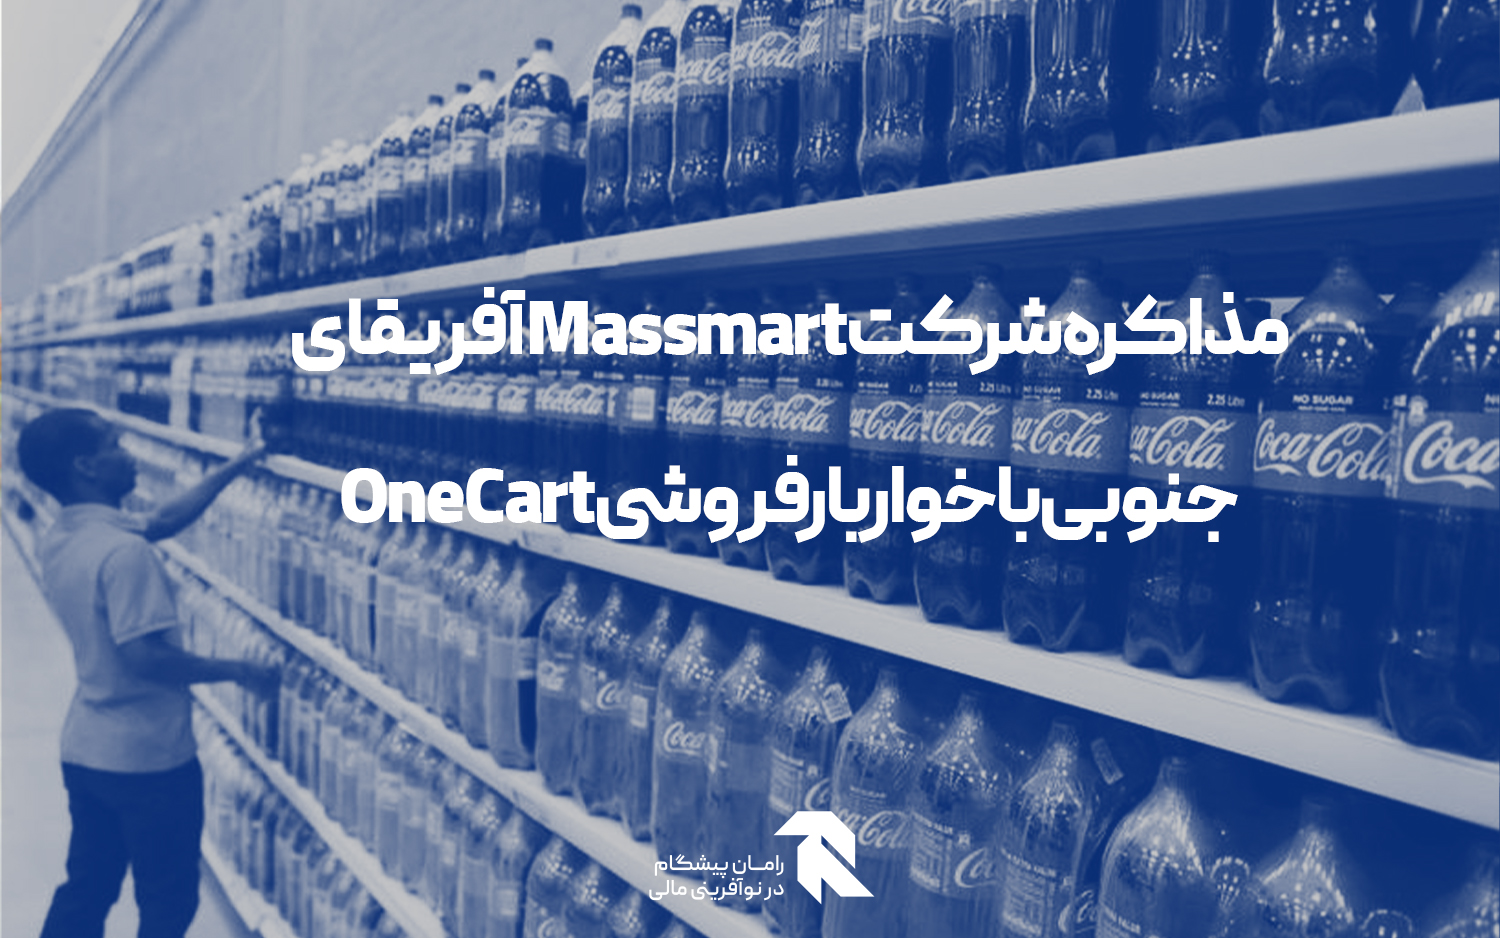 مذاکره شرکت Massmart آفریقای جنوبی با خواربارفروشی OneCart